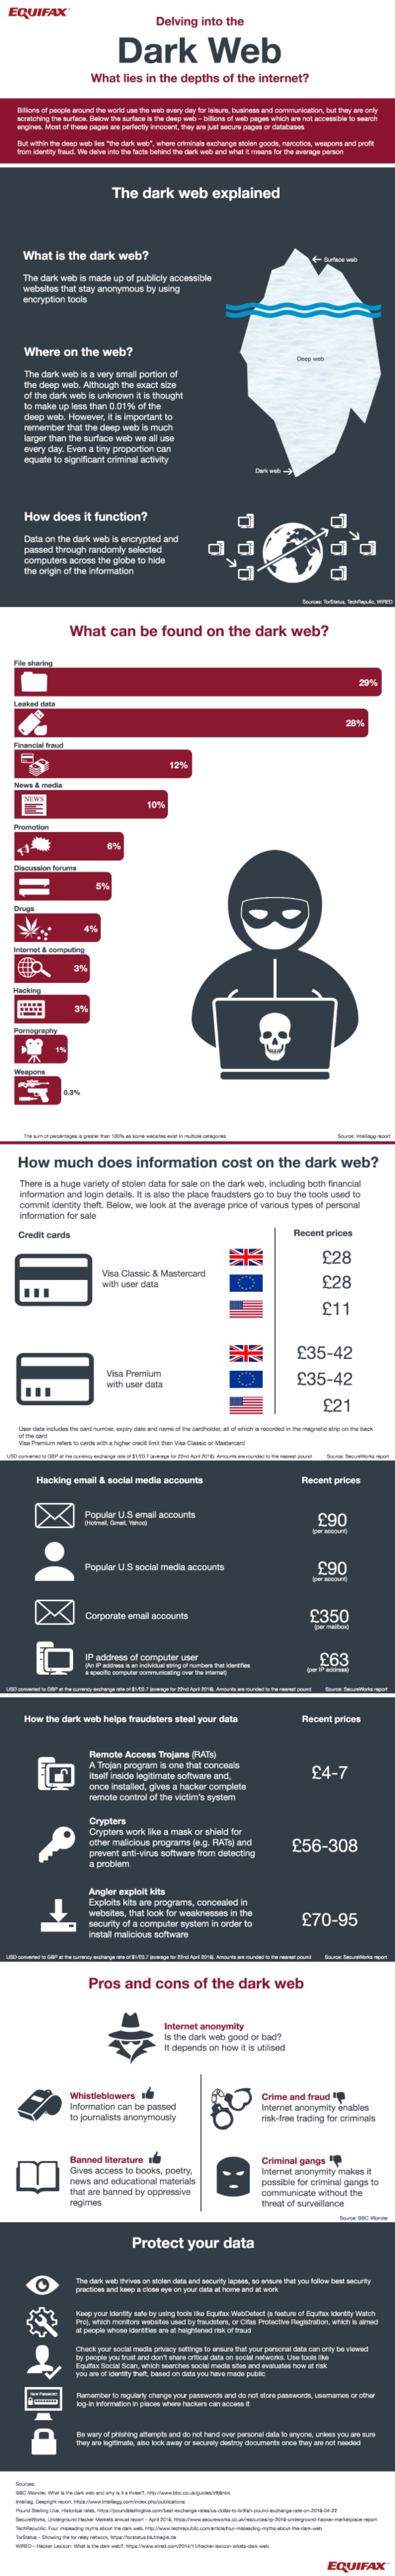 Infographic Dark Web Market